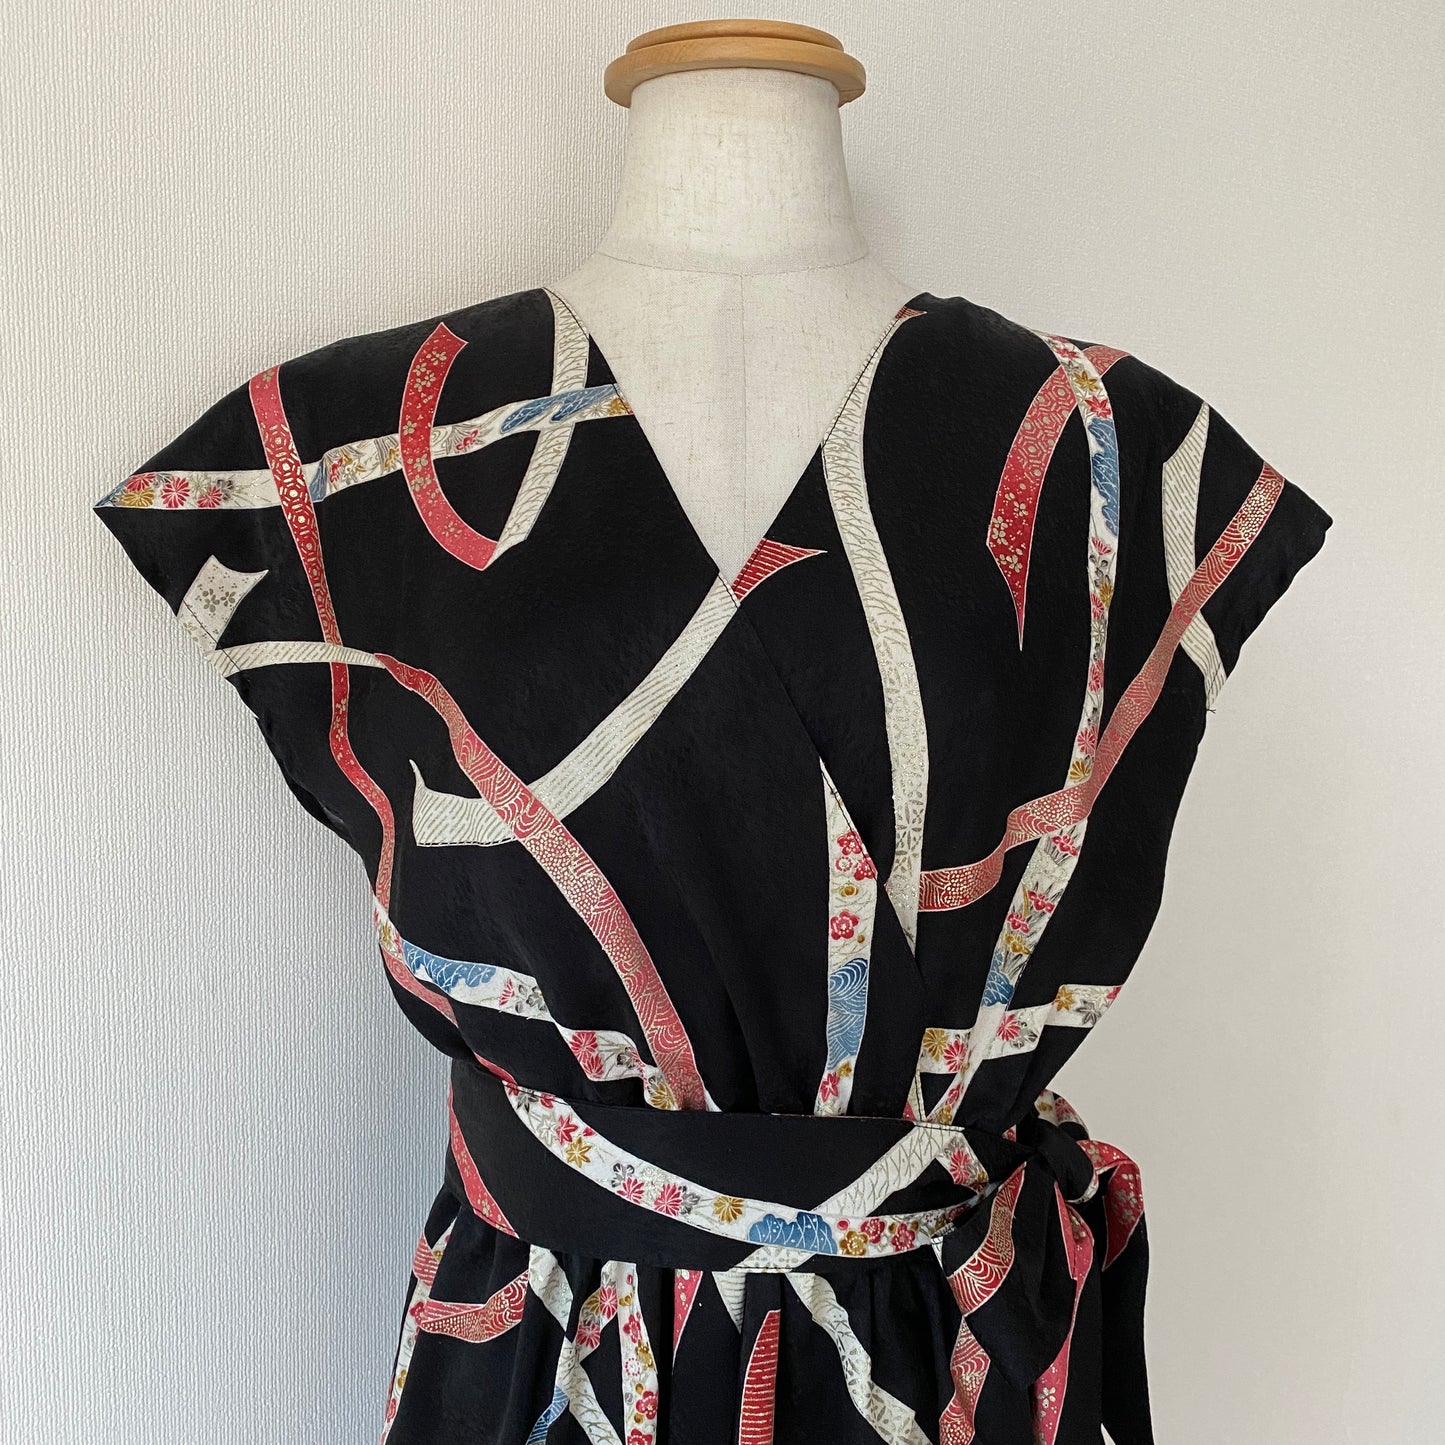 Kimono robe en soie, Komon 小紋, fabriquée à la main, recyclée